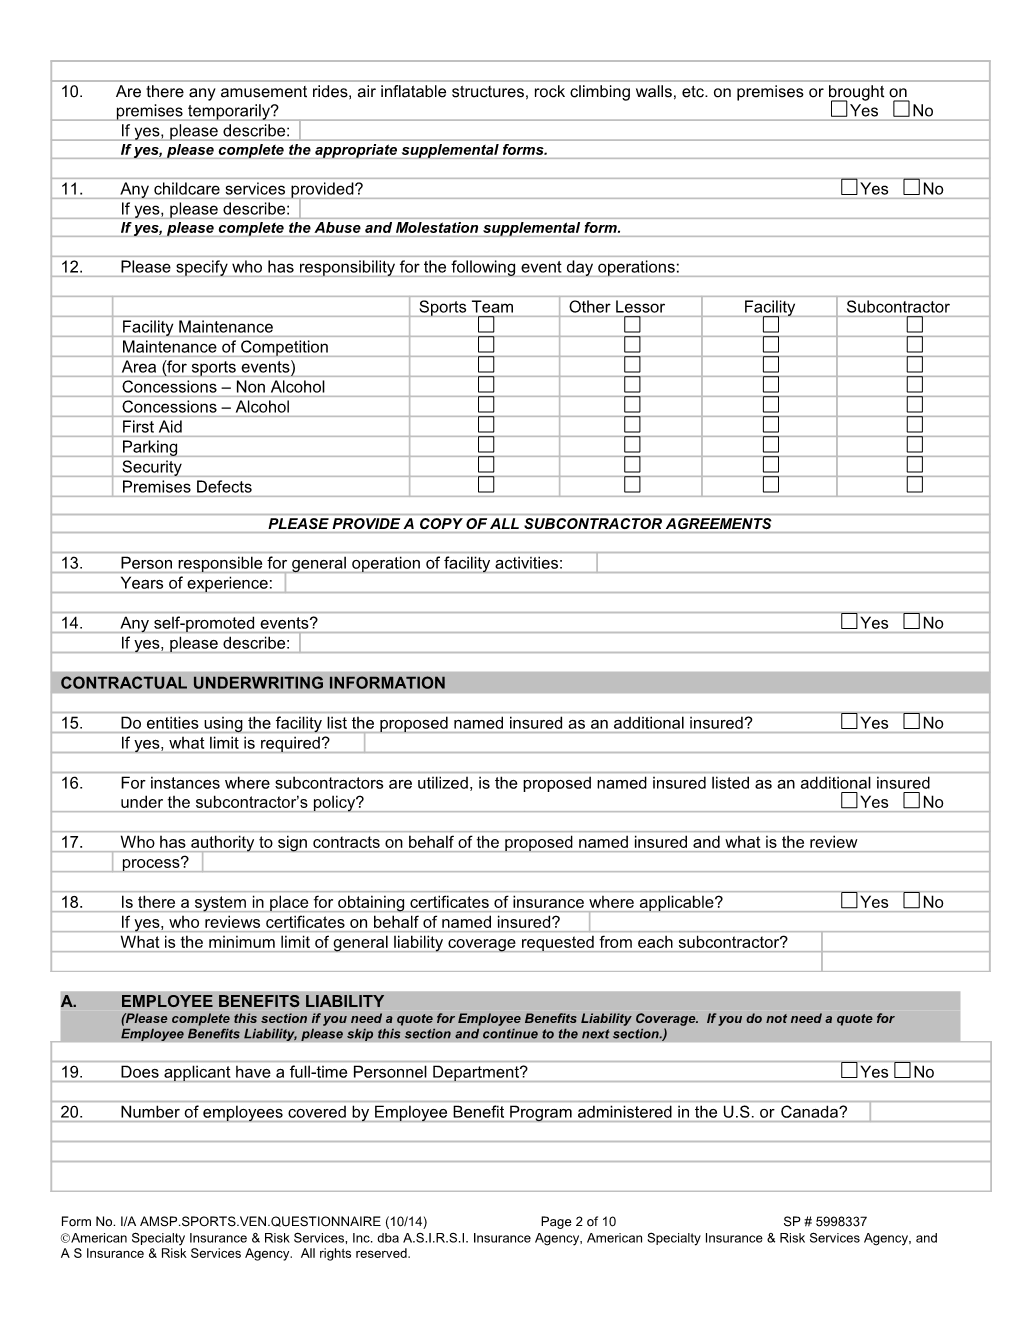 Insurance Questionnaire